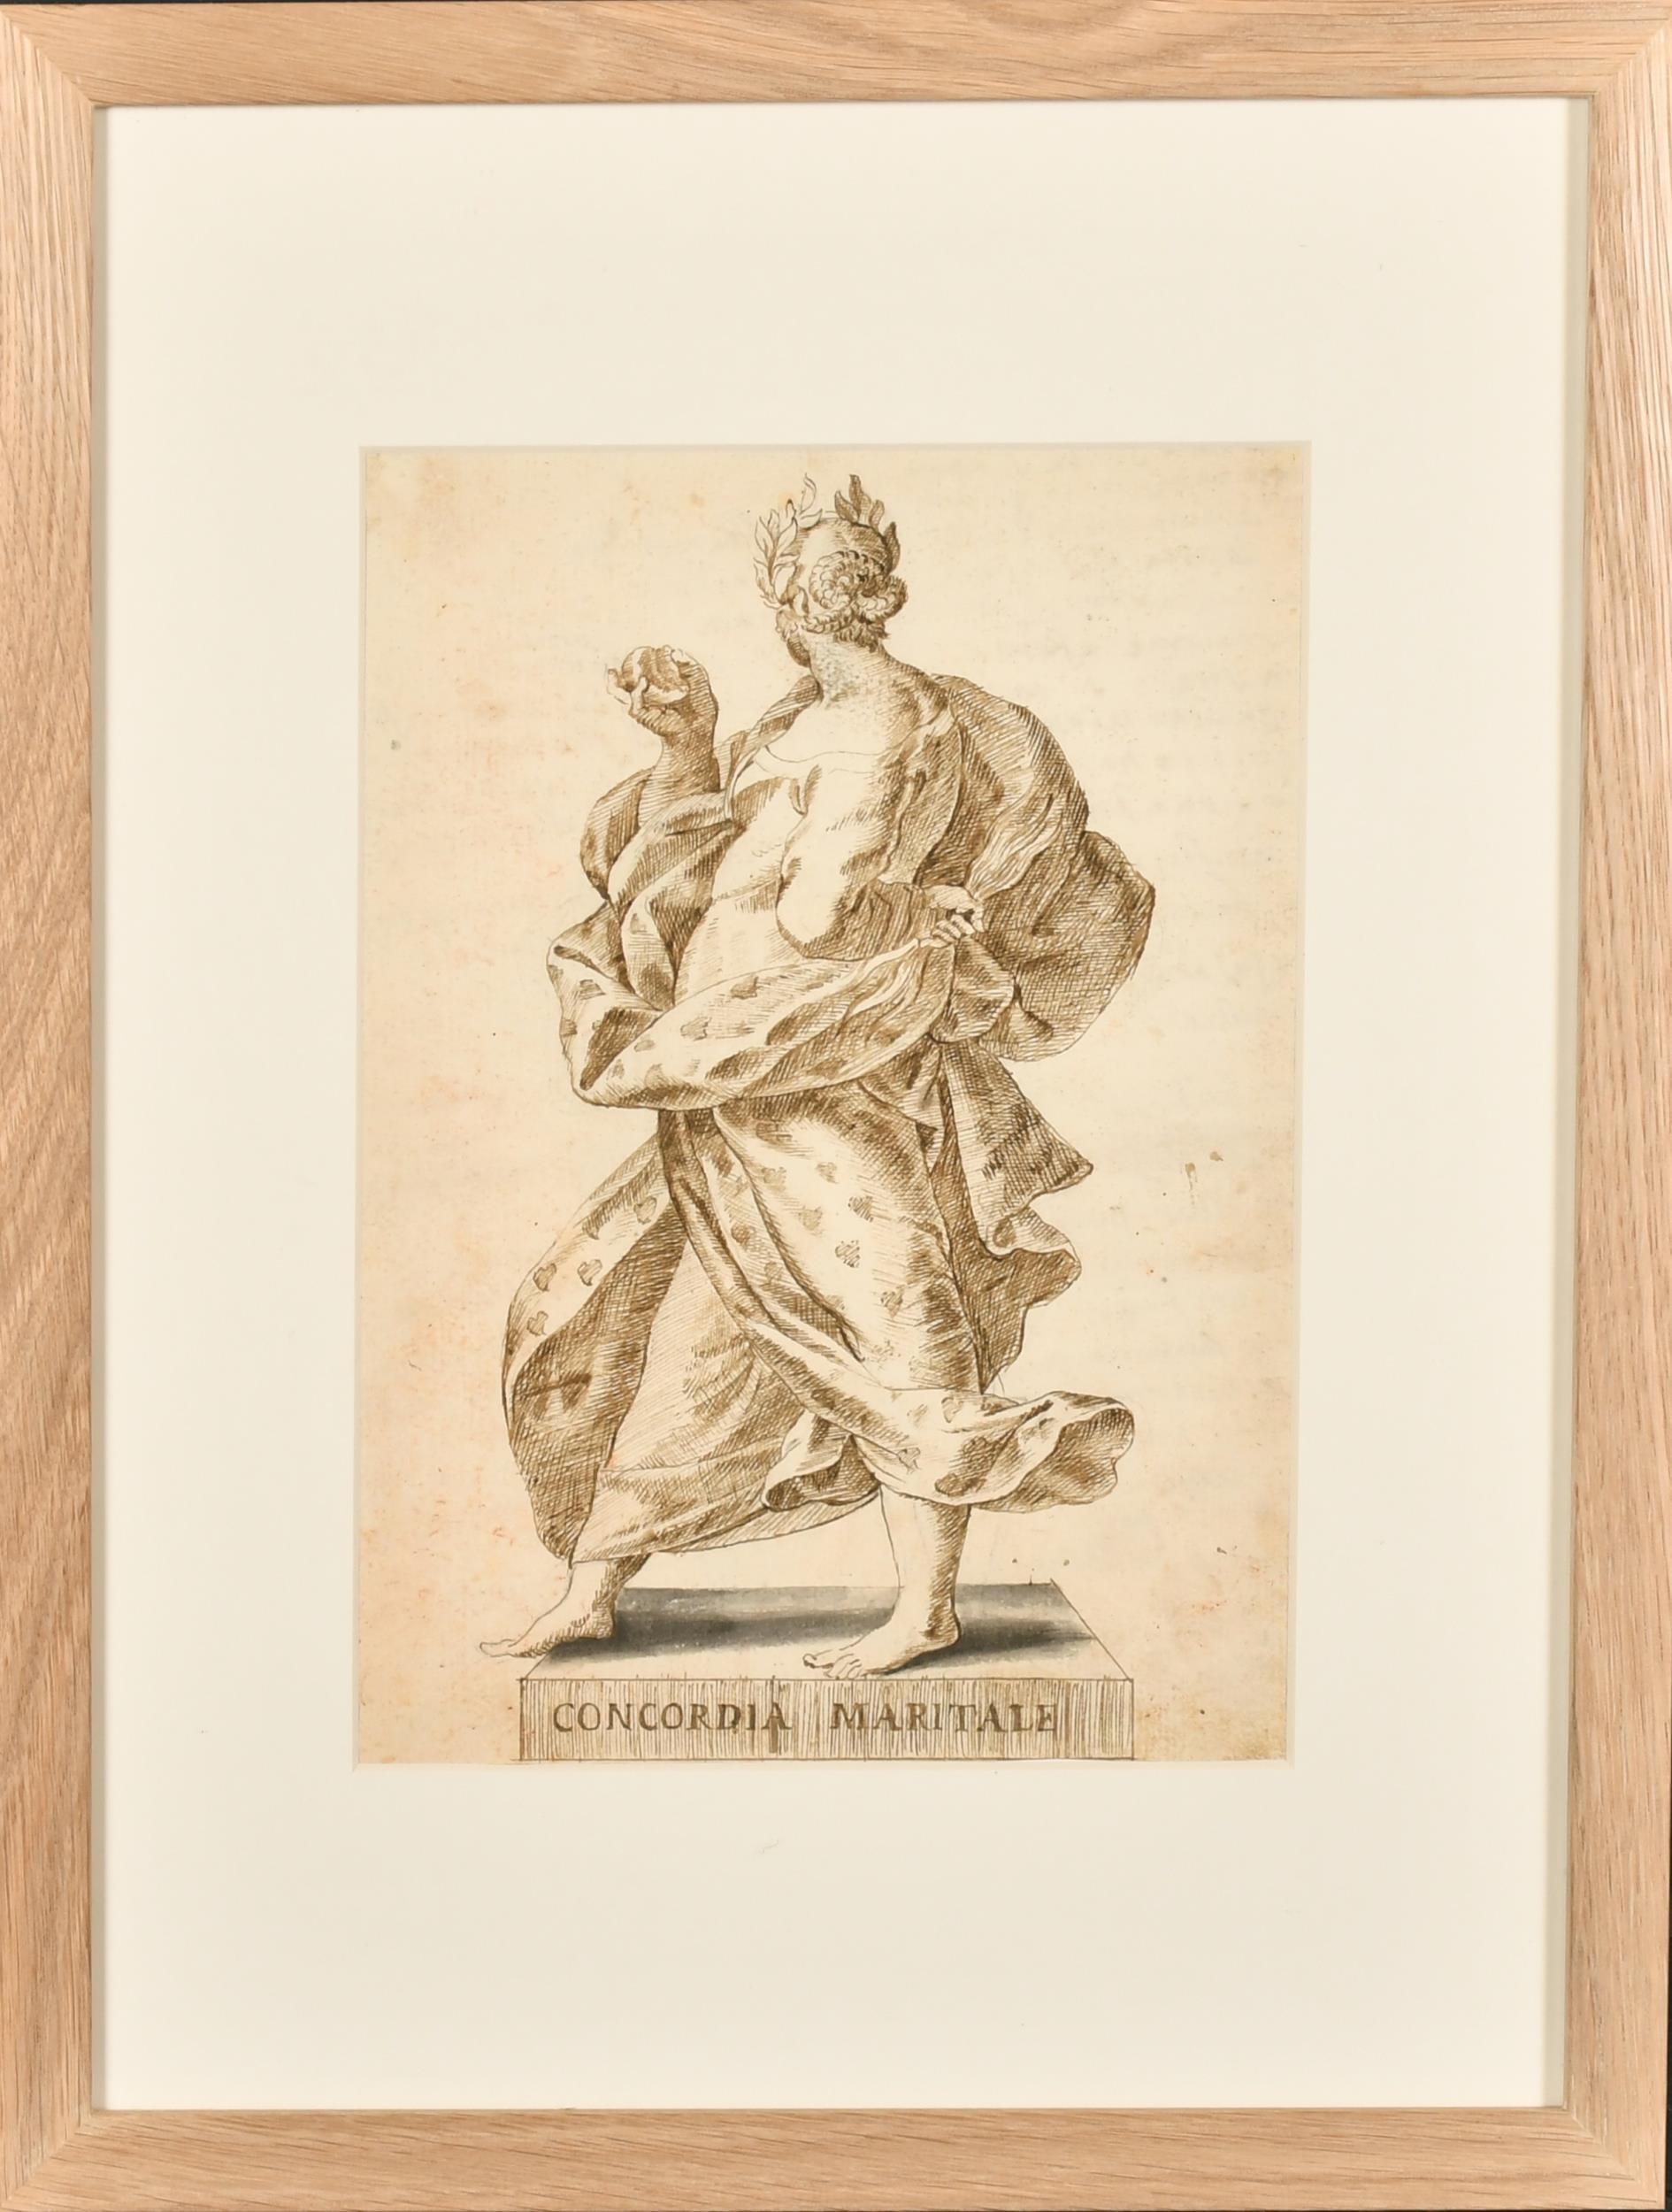 Italienische alte Meister-Tinten- und Waschzeichnung, römische Allegorische Hochzeit, 1700er Jahre – Painting von 18thC Italian Old Master